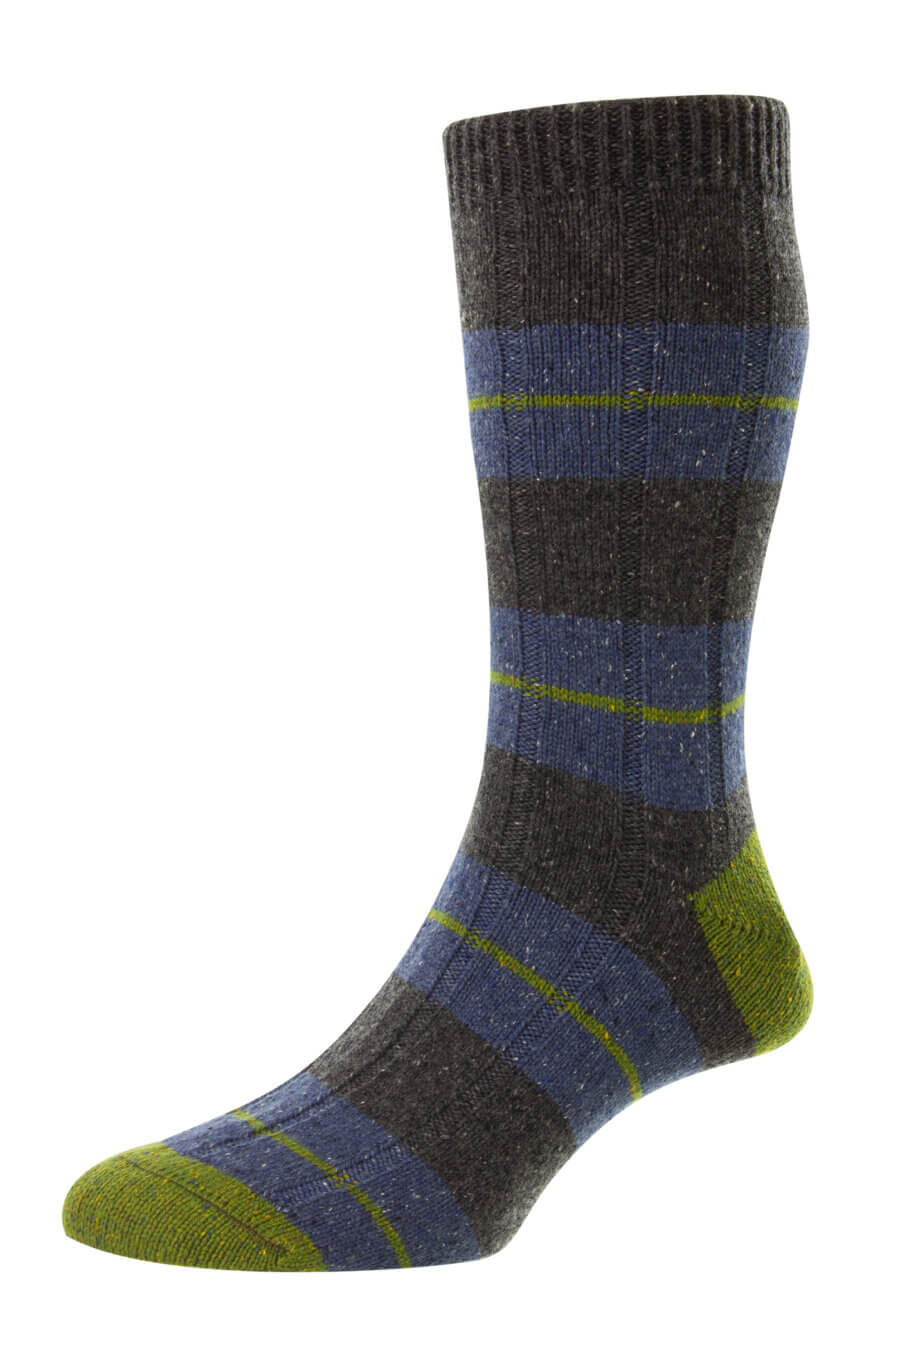 Pantherella Wool Socks